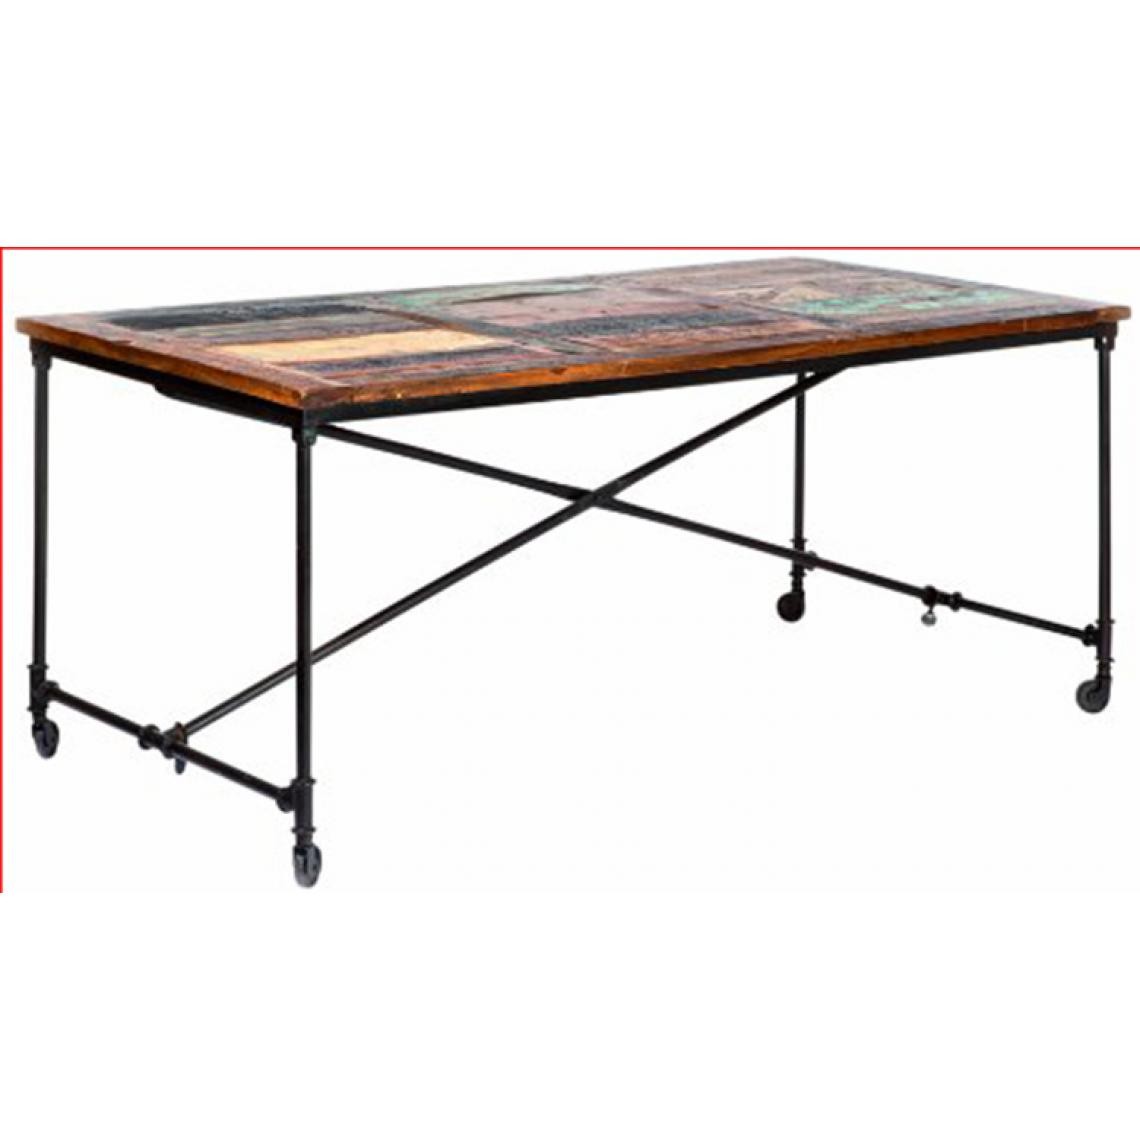 Pegane - Table en métal Rouille et bois Mango Coloris marron, Dim : L90 x P180 x H77 cm - Tables à manger